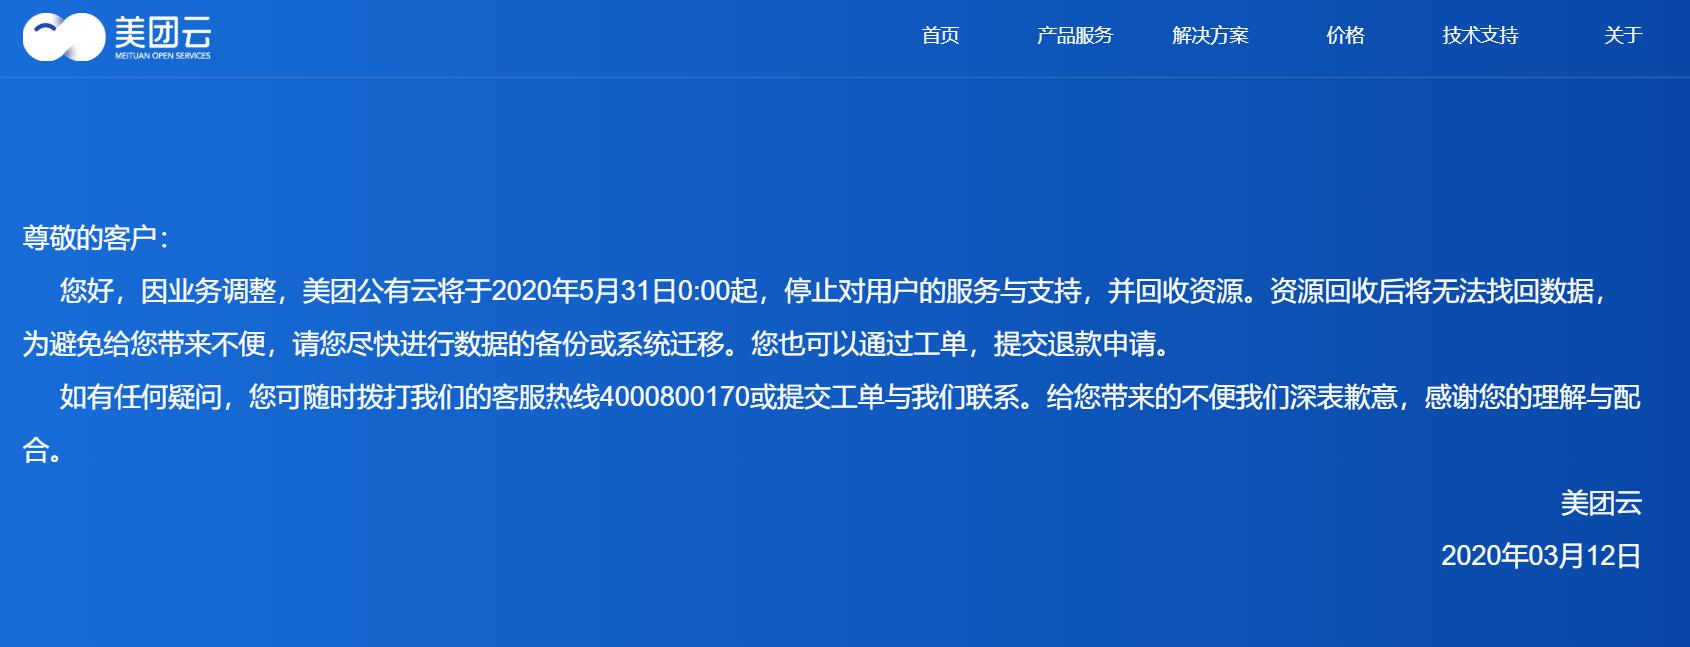 美团公有云业务关停 将从5月31日起停止服务